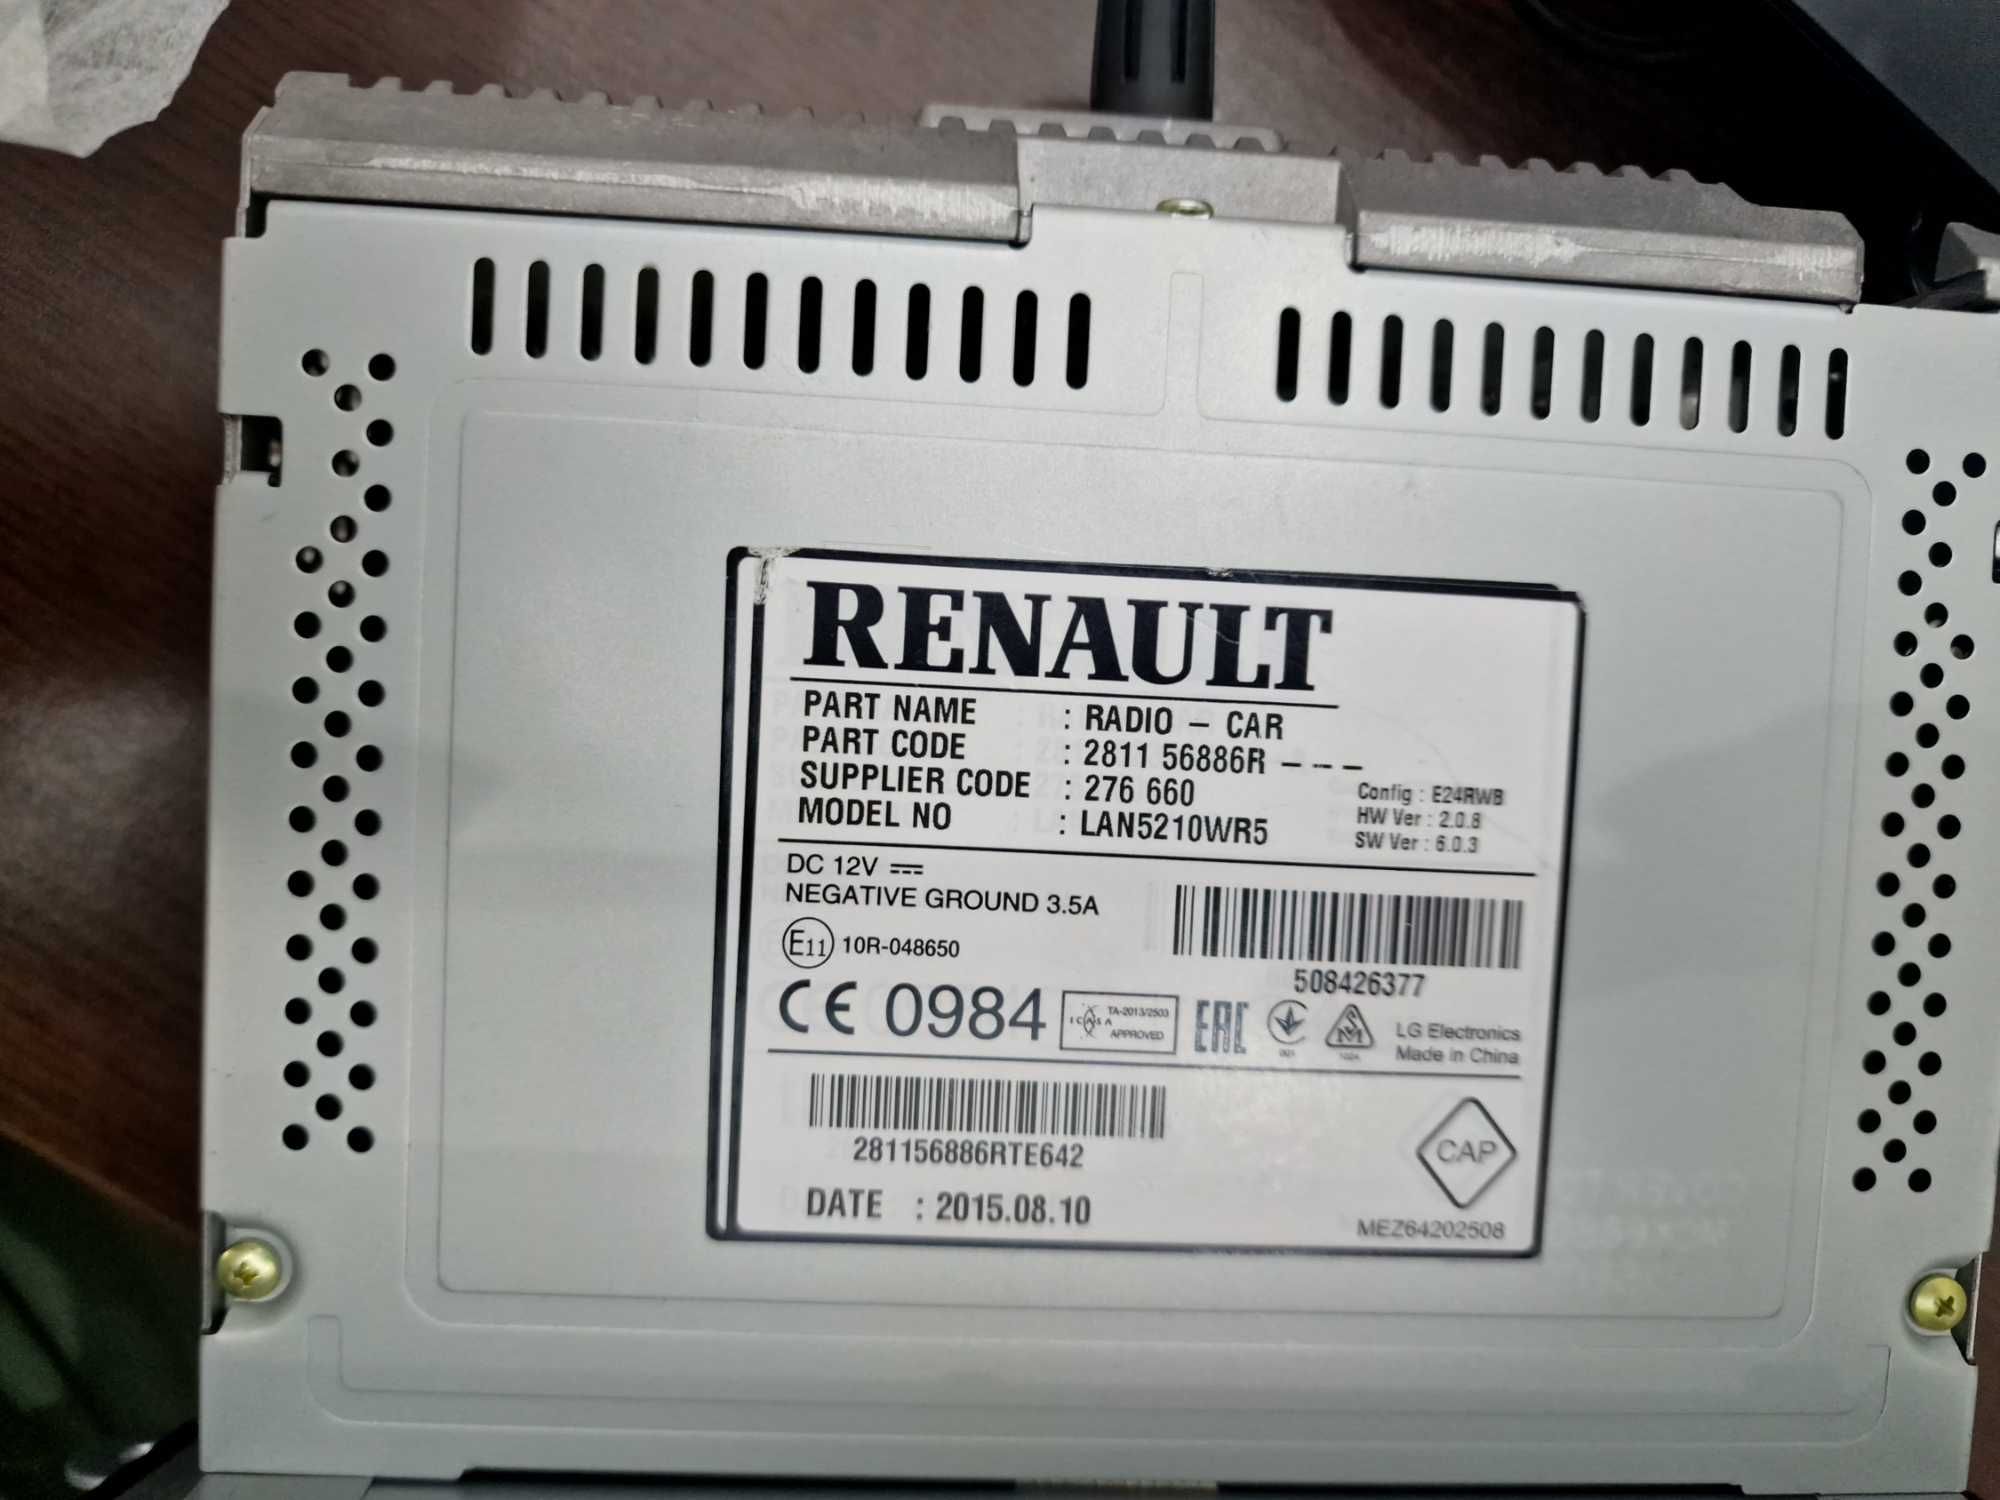 RADIO_CAR Renault nou, original LAN521WRS